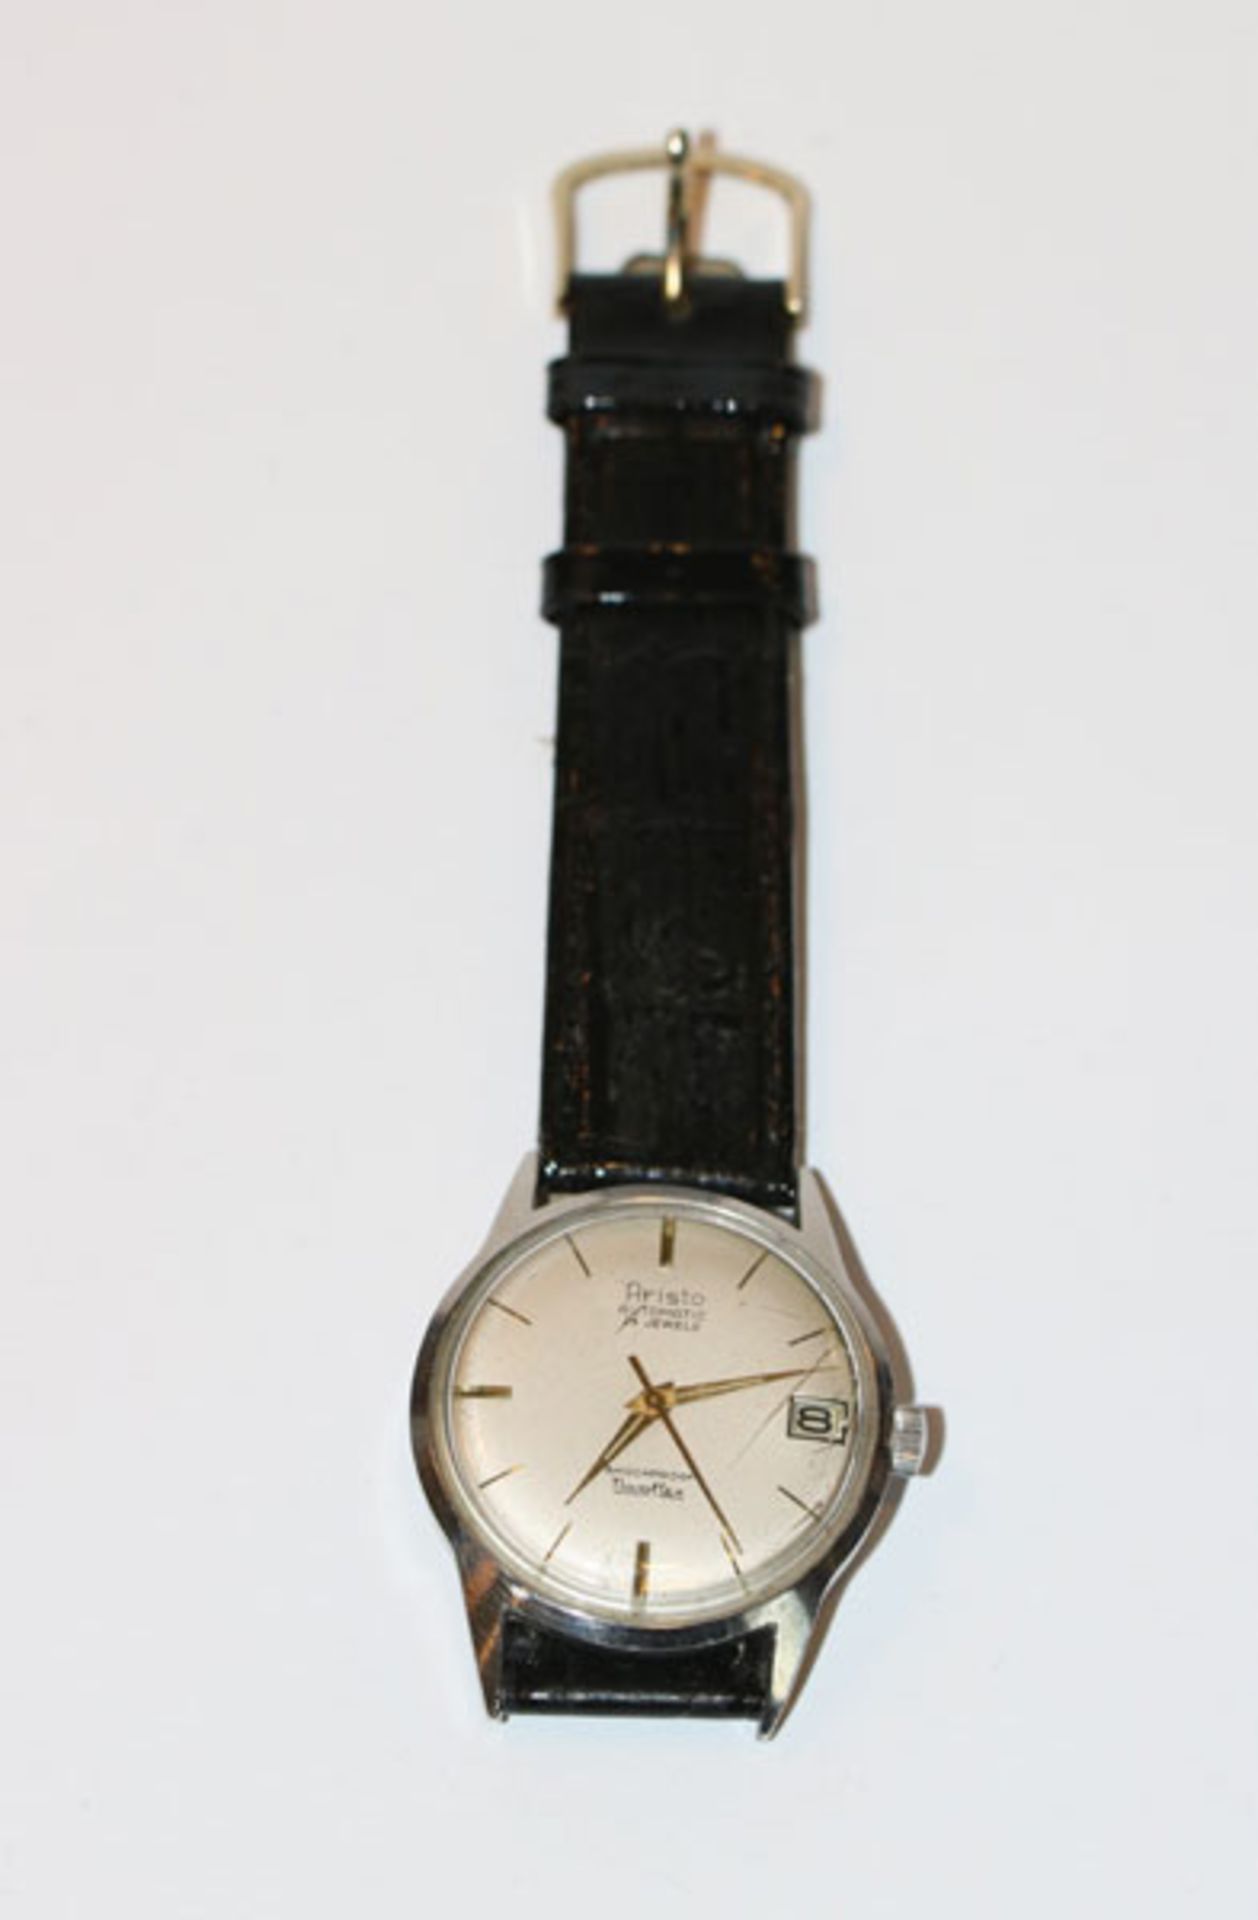 Aristo Automatic Herren Armbanduhr mit Datumsanzeige, intakt, an schwarzem Armband